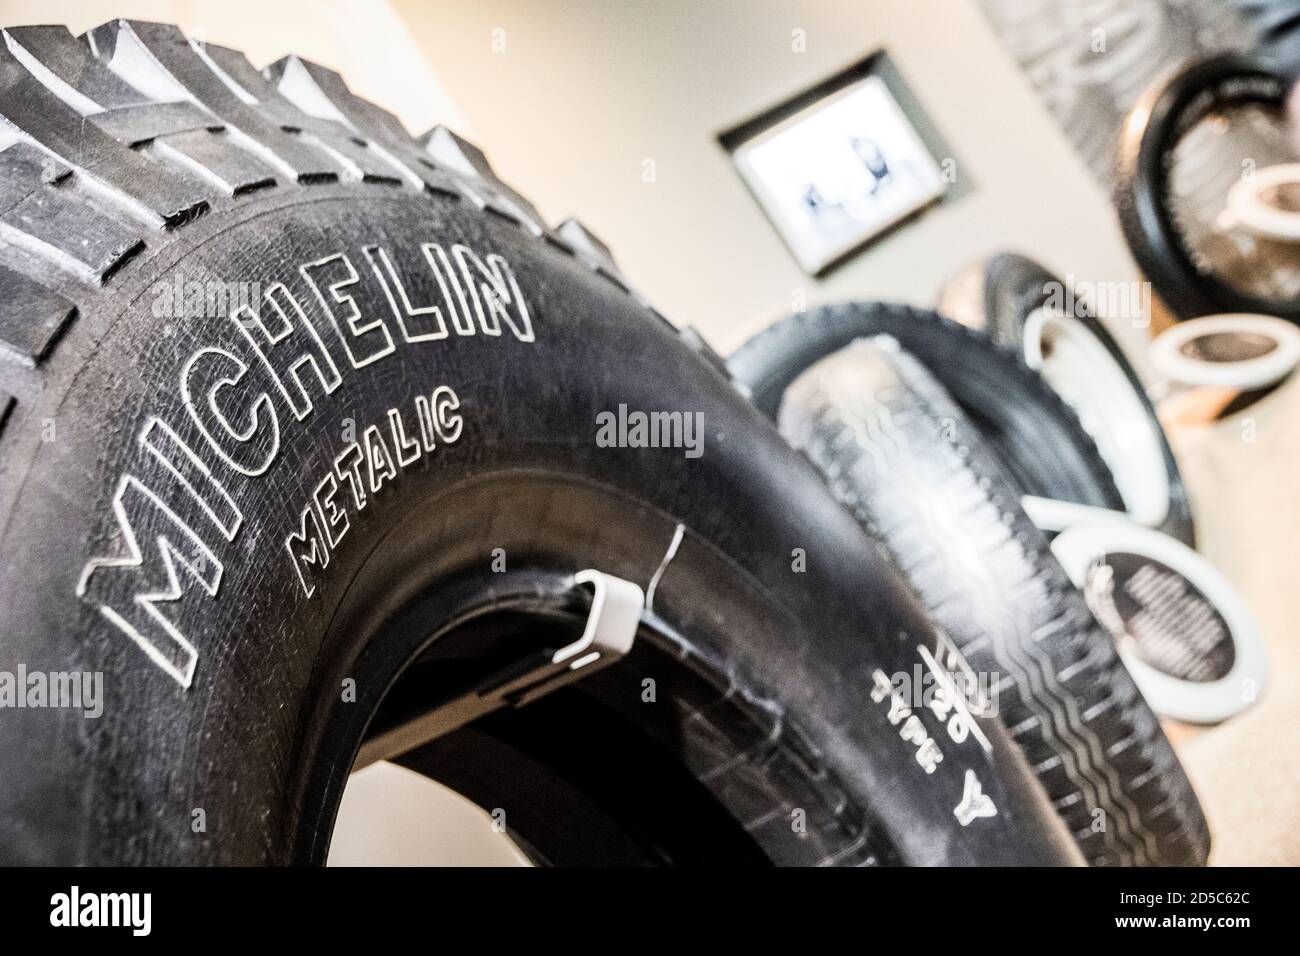 Alamy – und logo Auflösung in -Bildmaterial reifen Michelin -Fotos hoher